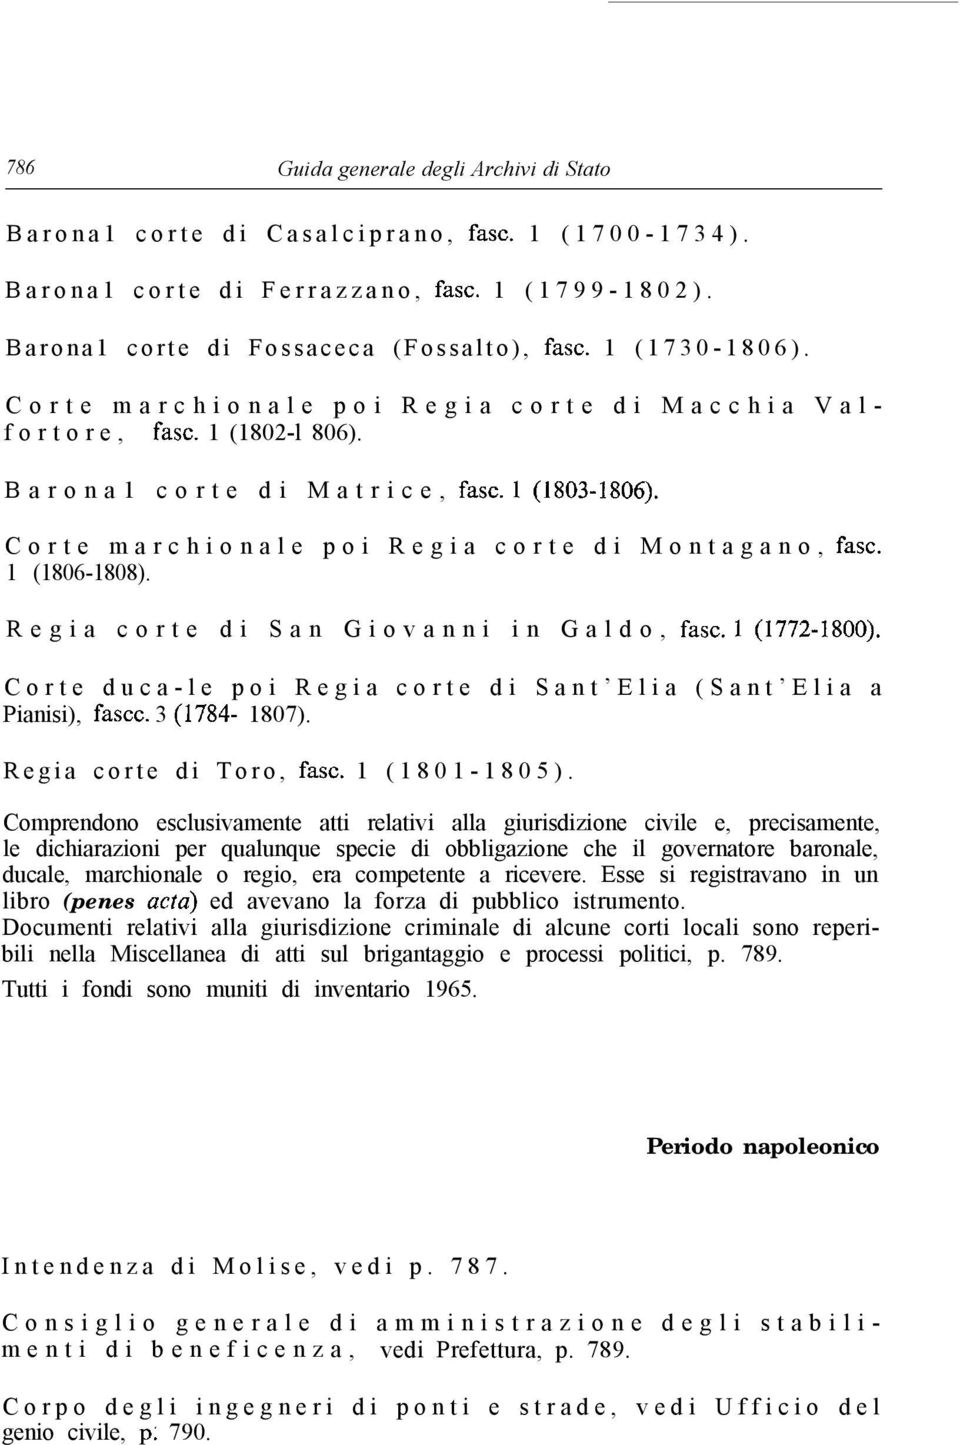 1 (1806-1808). Regia corte di San Giovanni in Galdo, fast. 1(1772-1800). Corte duca-le poi Regia corte di Sant Elia (Sant Elia a Pianisi), fasce. 3 (1784-1807). Regia corte di Toro, fast.